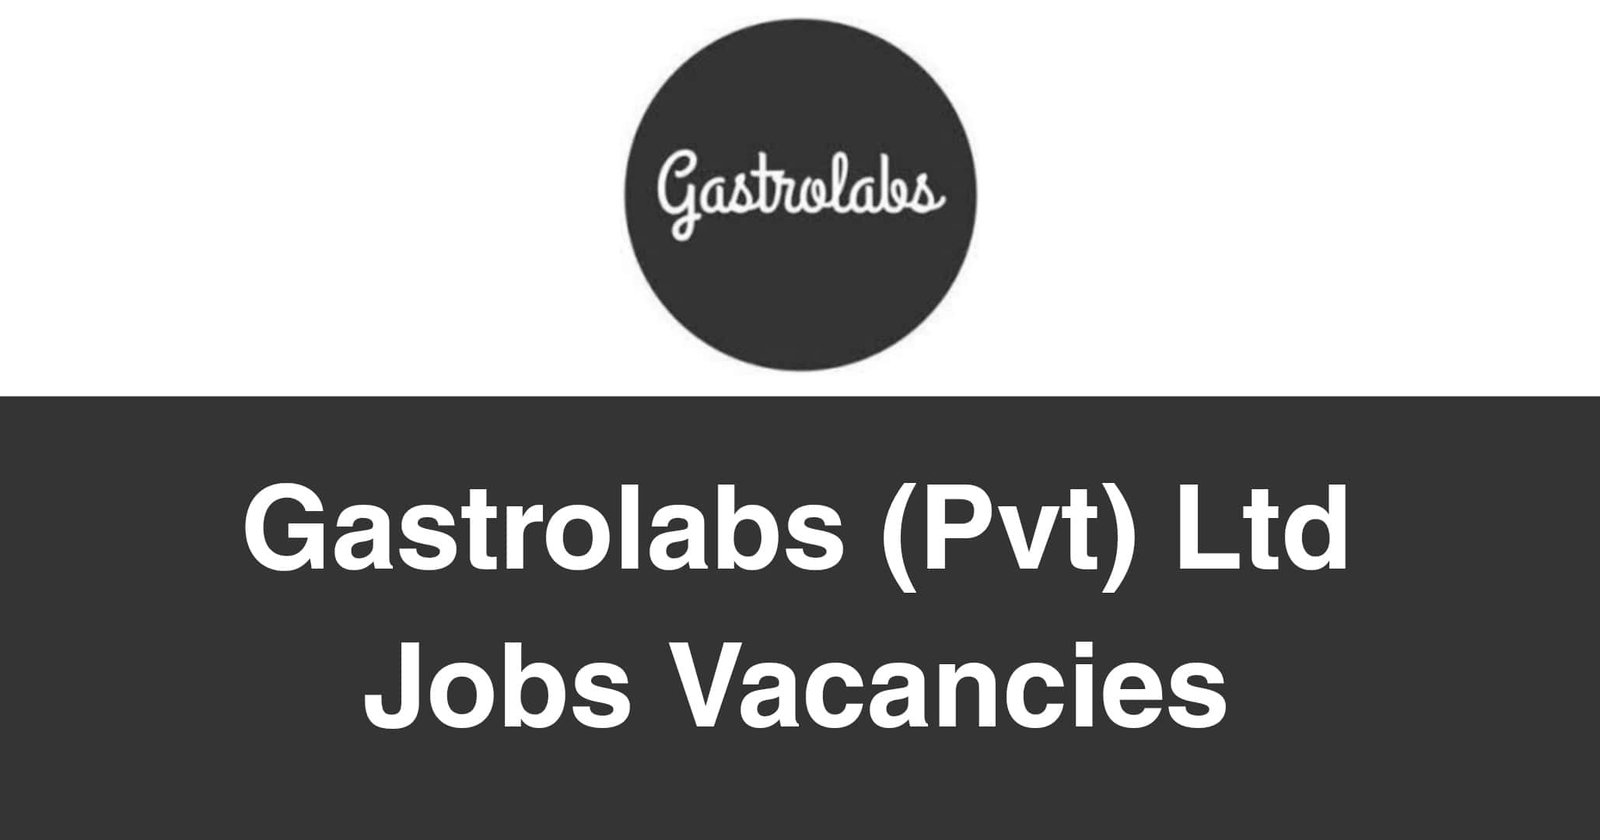 Gastrolabs (Pvt) Ltd Jobs Vacancies